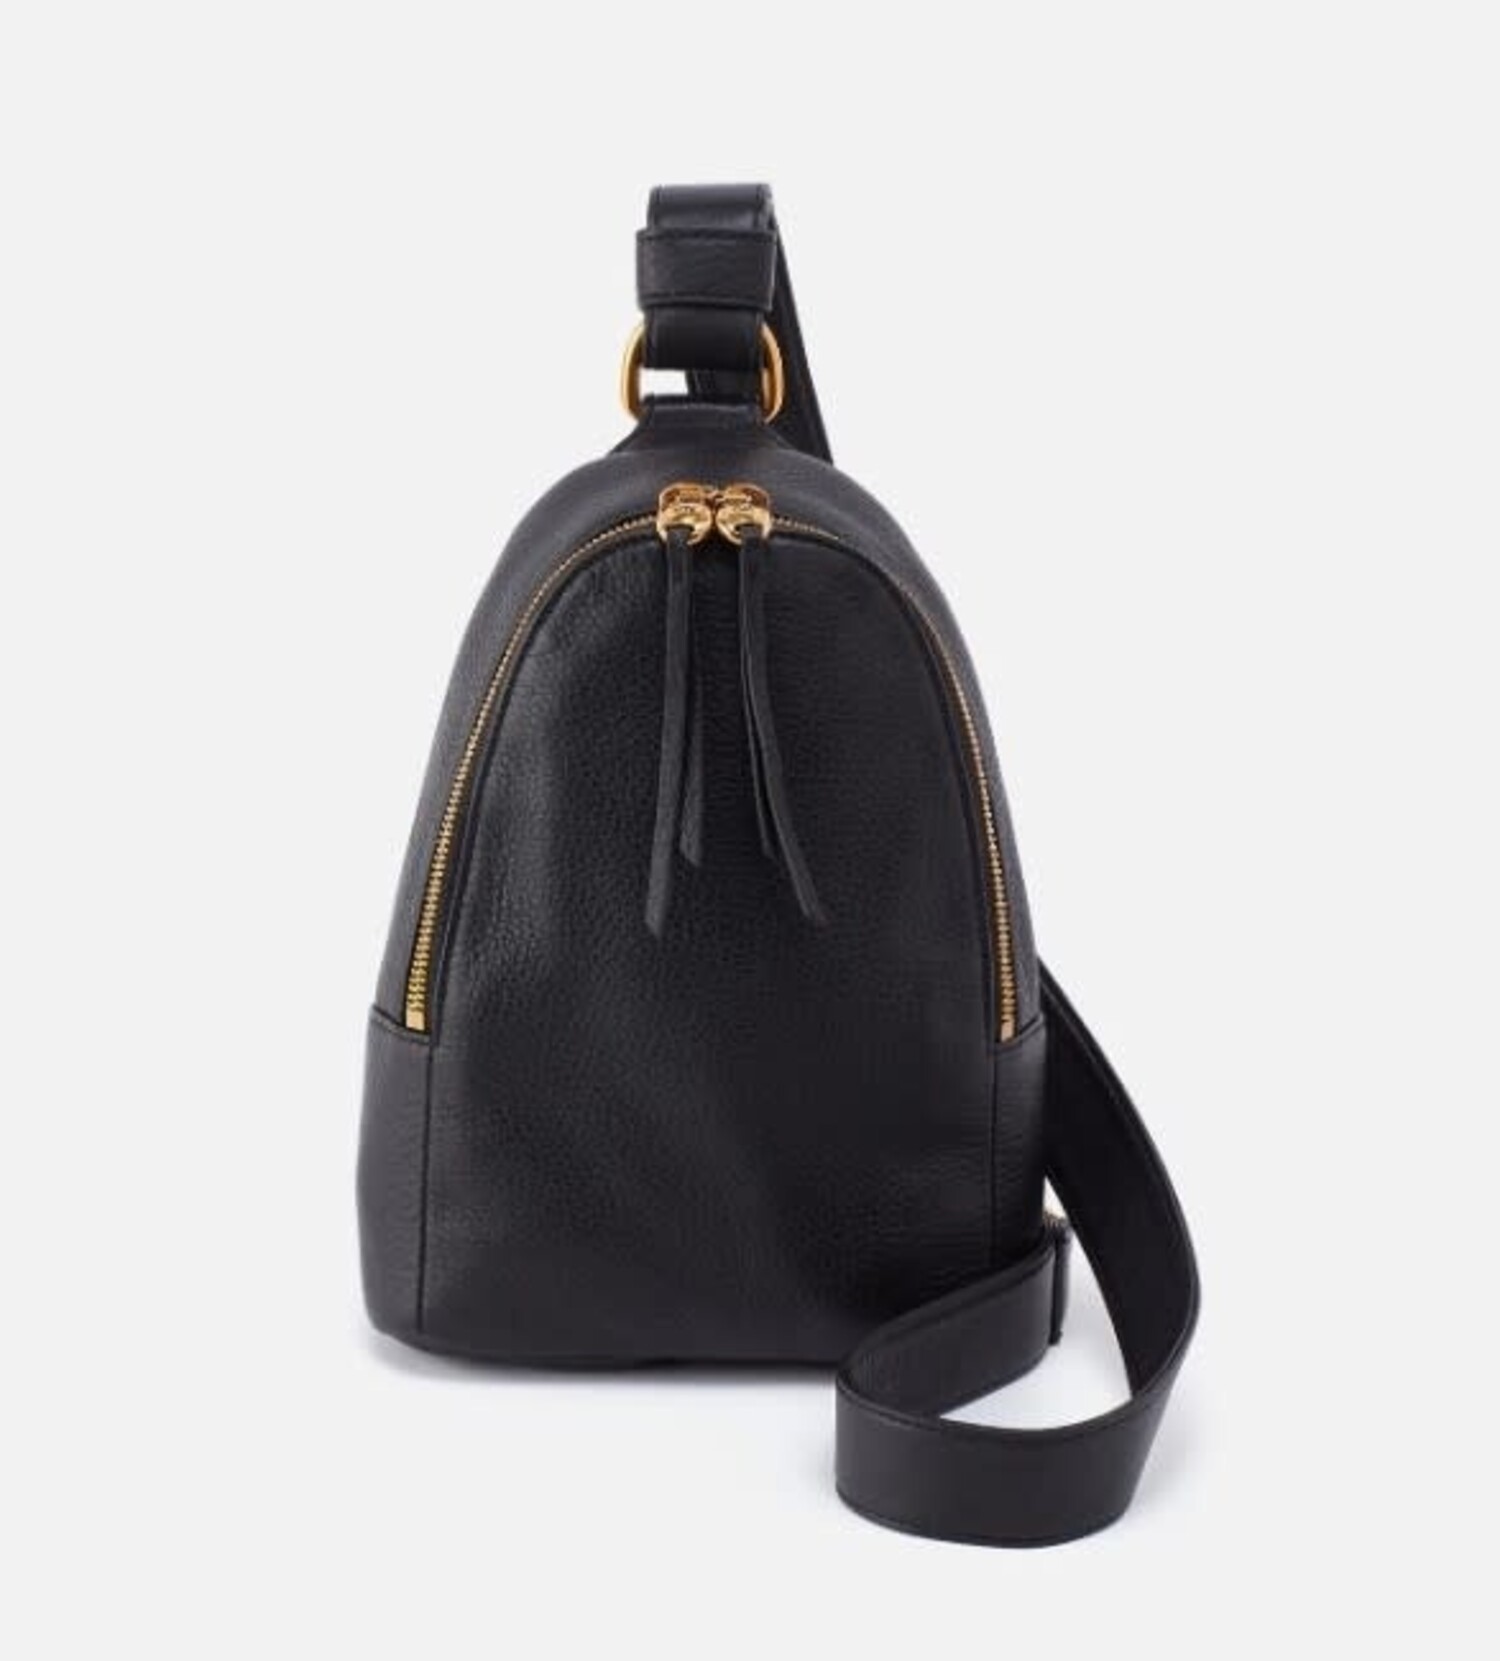 Pier Shoulder Bag in Pebbled Leather - Black